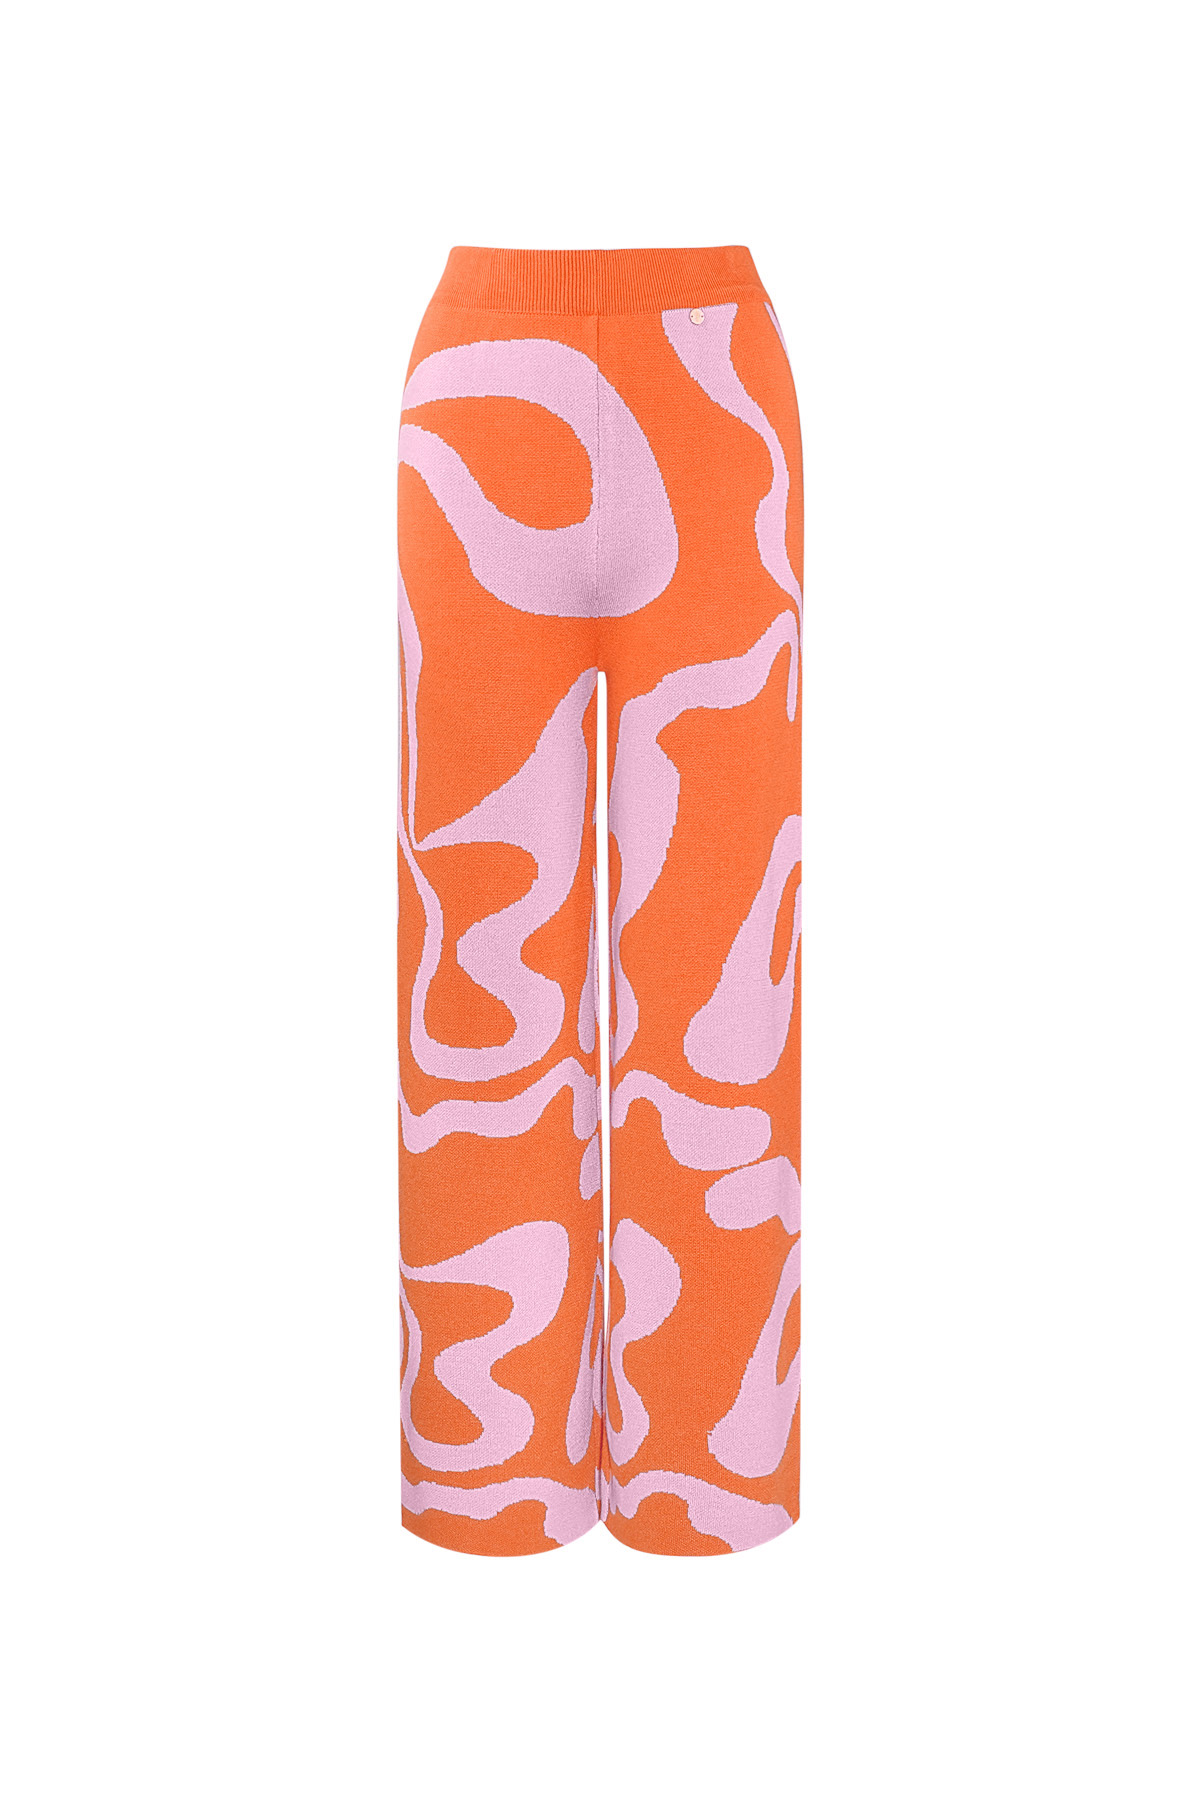 Hose mit Bio-Streifendruck - Orange und Rosa